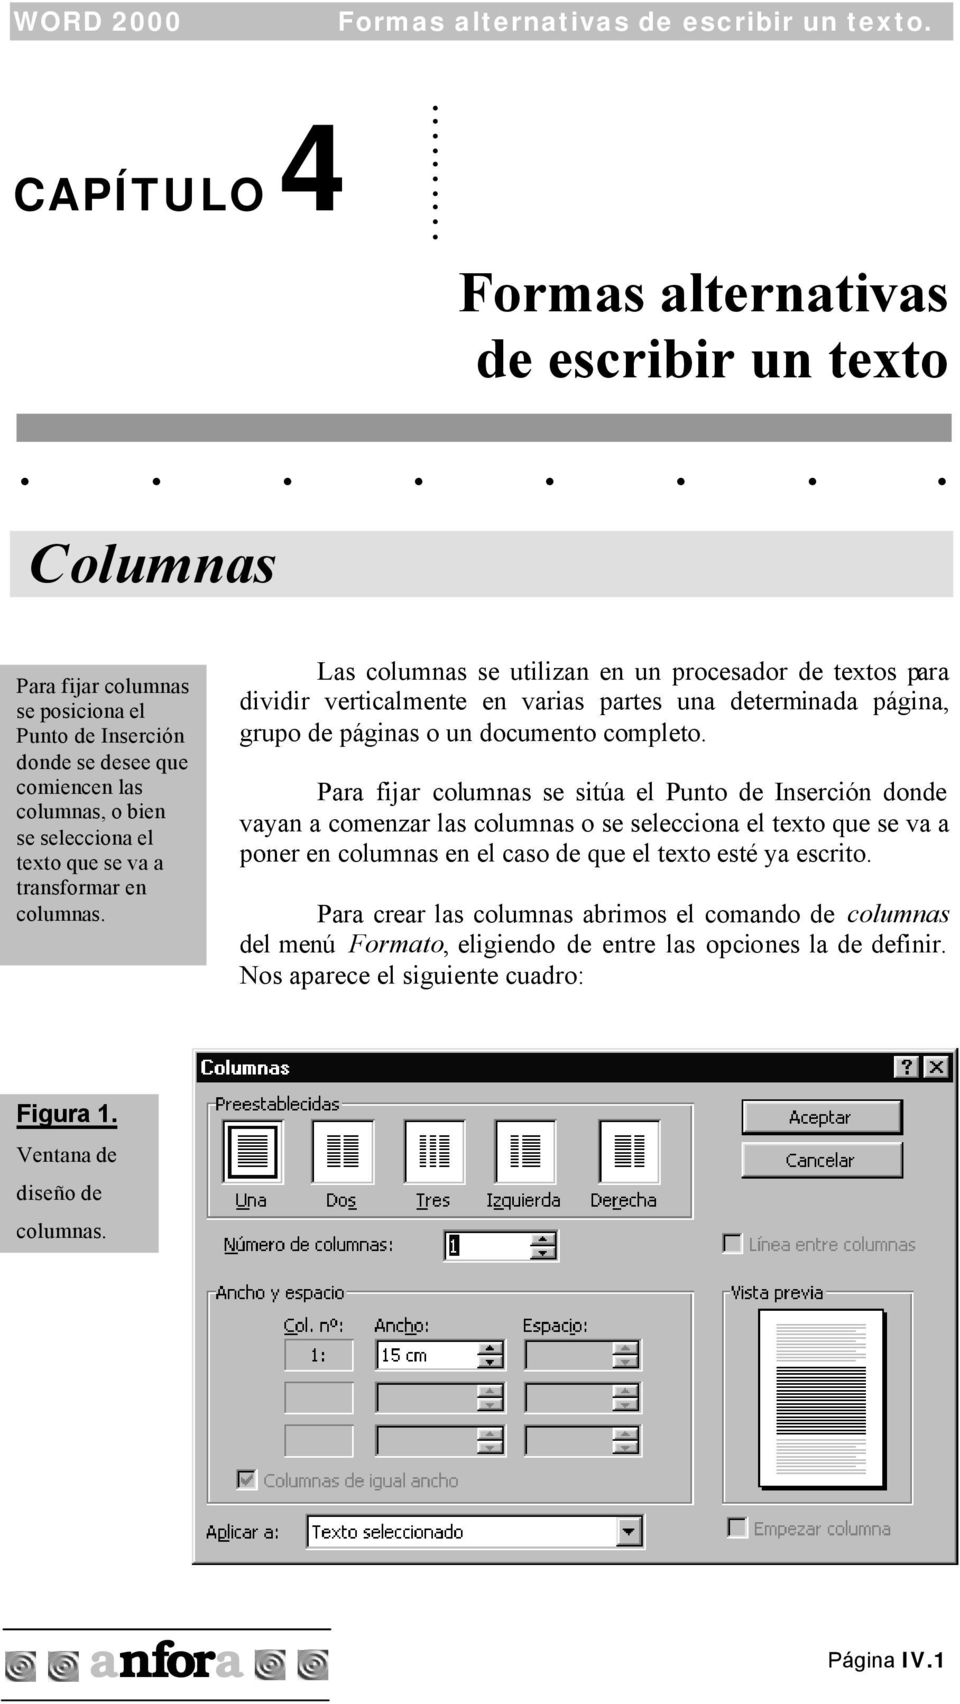 Las columnas se utilizan en un procesador de textos para dividir verticalmente en varias partes una determinada página, grupo de páginas o un documento completo.